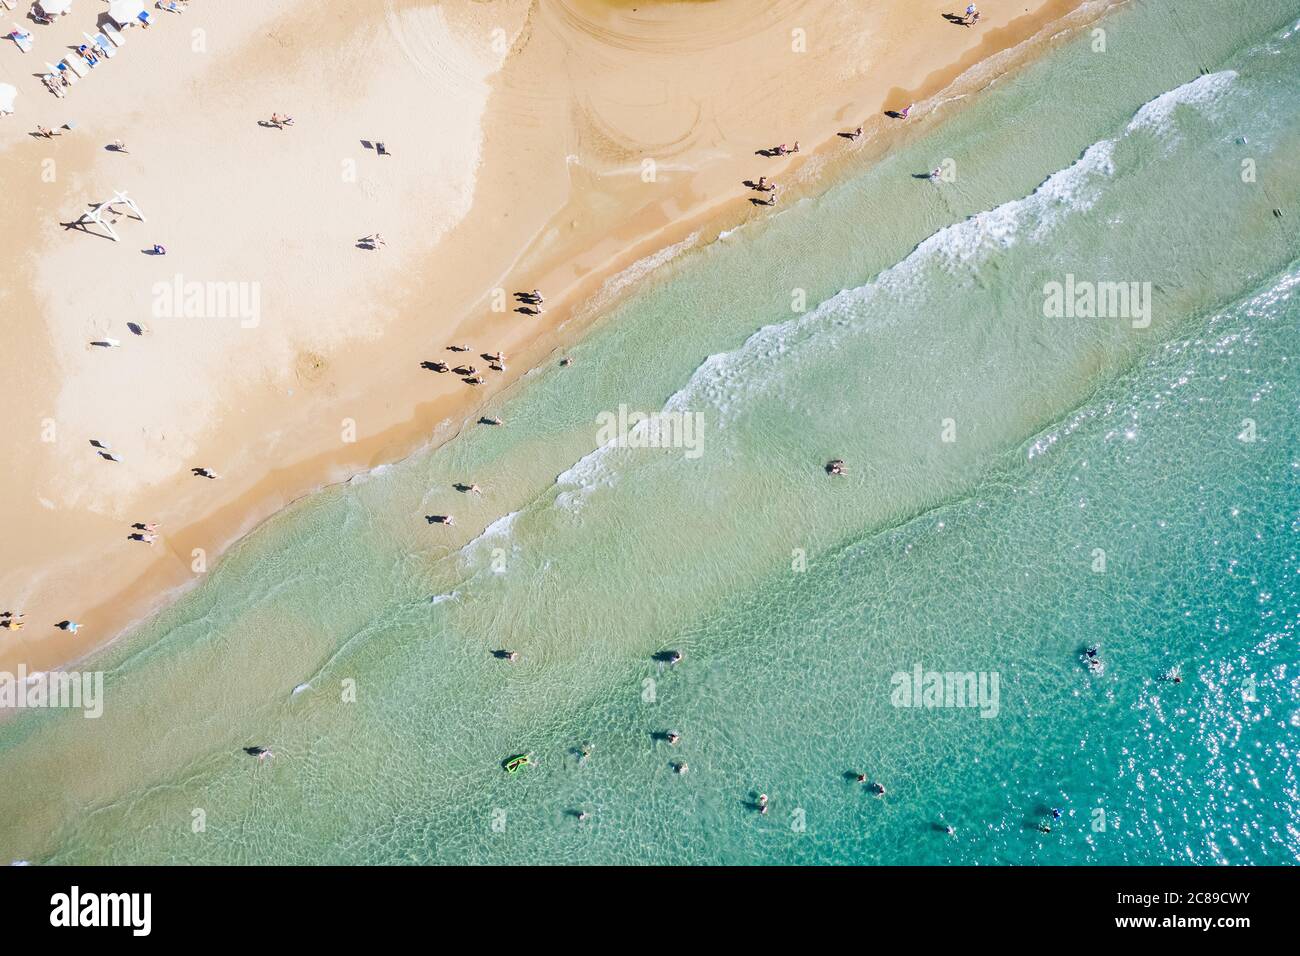 Vista aerea di una spiaggia di sabbia e ombrellone. Concetto di turismo e vacanza. Foto di alta qualità Foto Stock